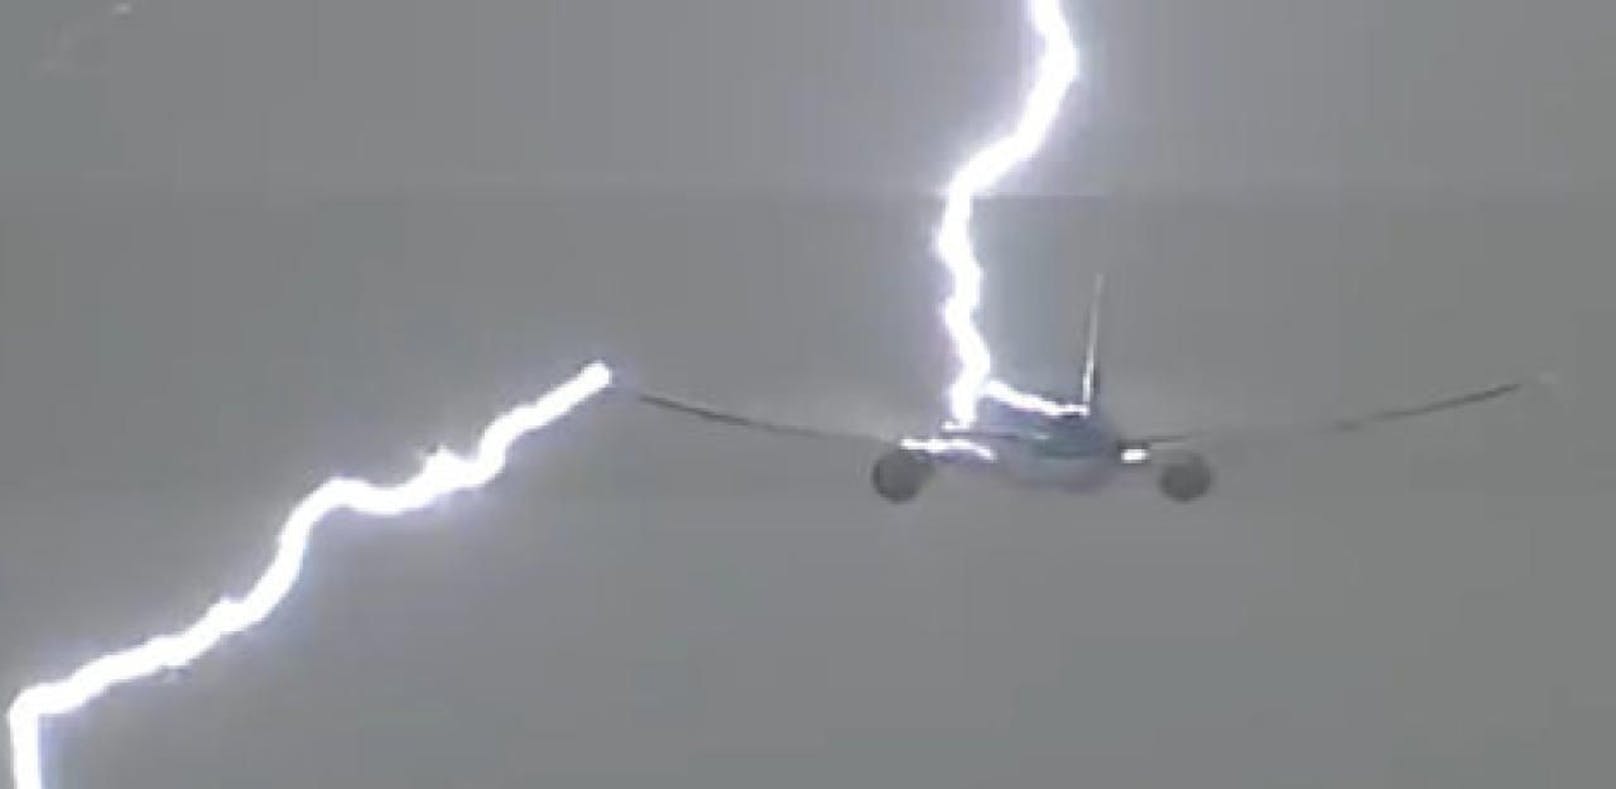 Video zeigt Blitzeinschlag in KLM-Maschine